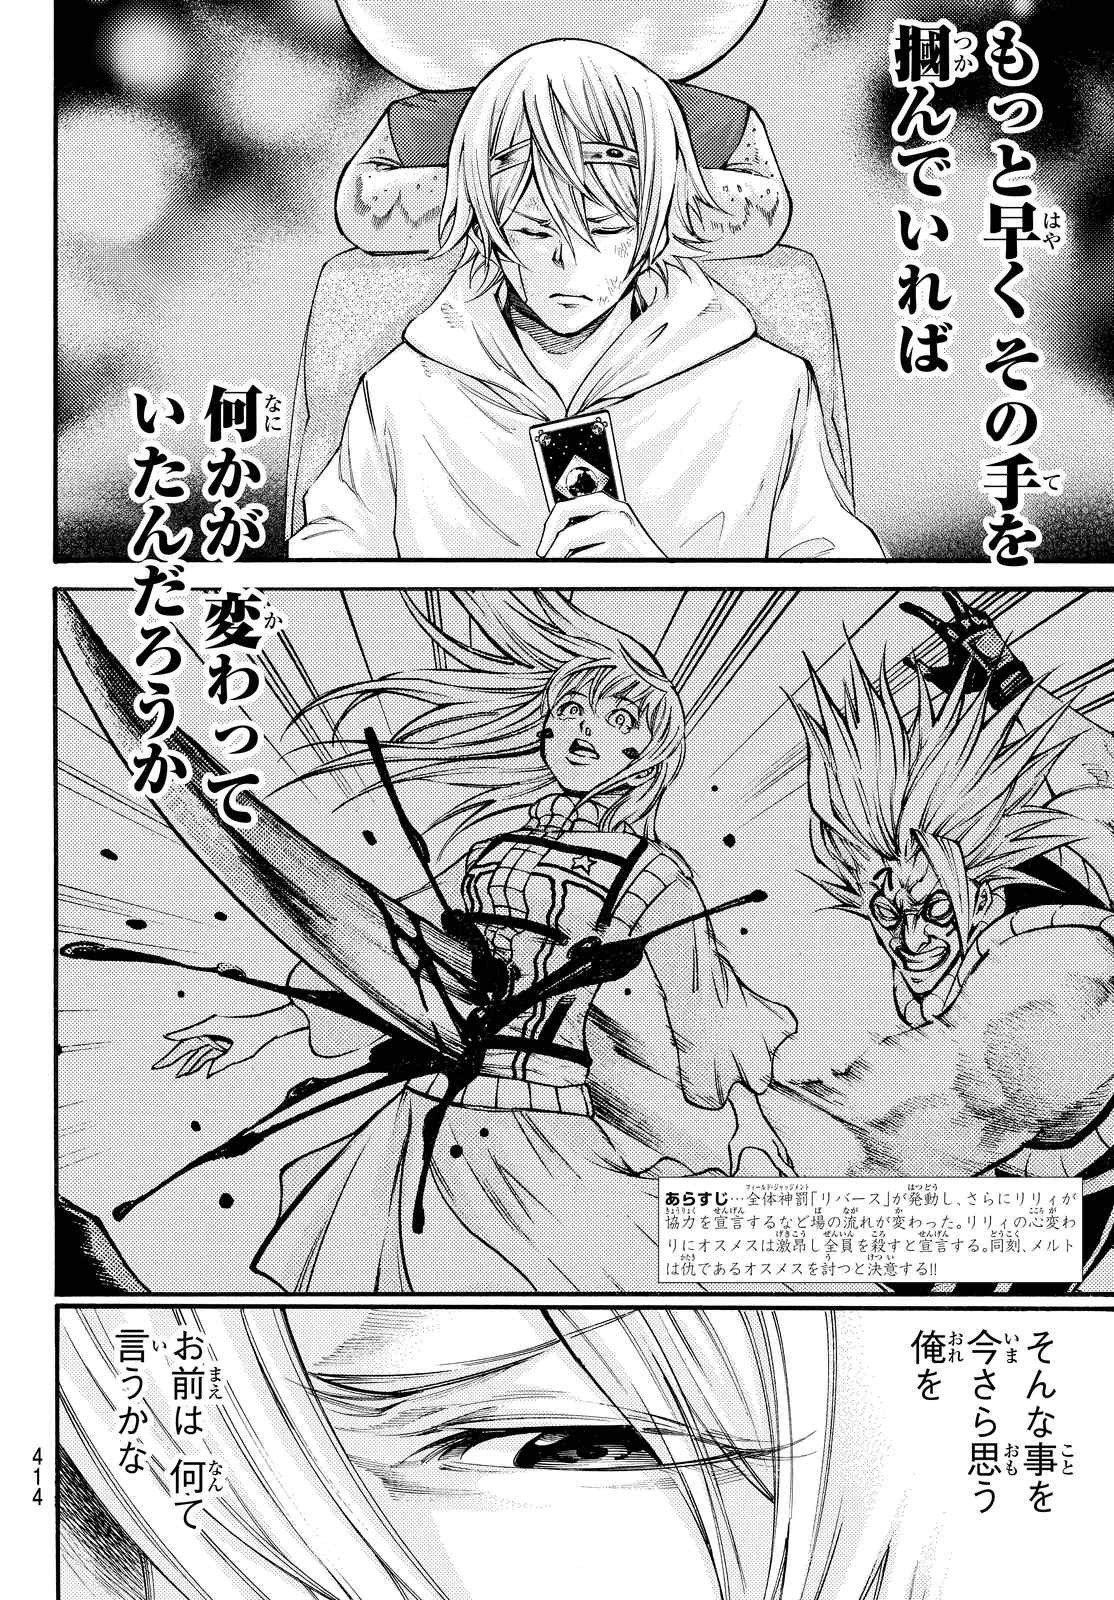 Kamisama_no_Ituori - Chapter 158 - Page 2